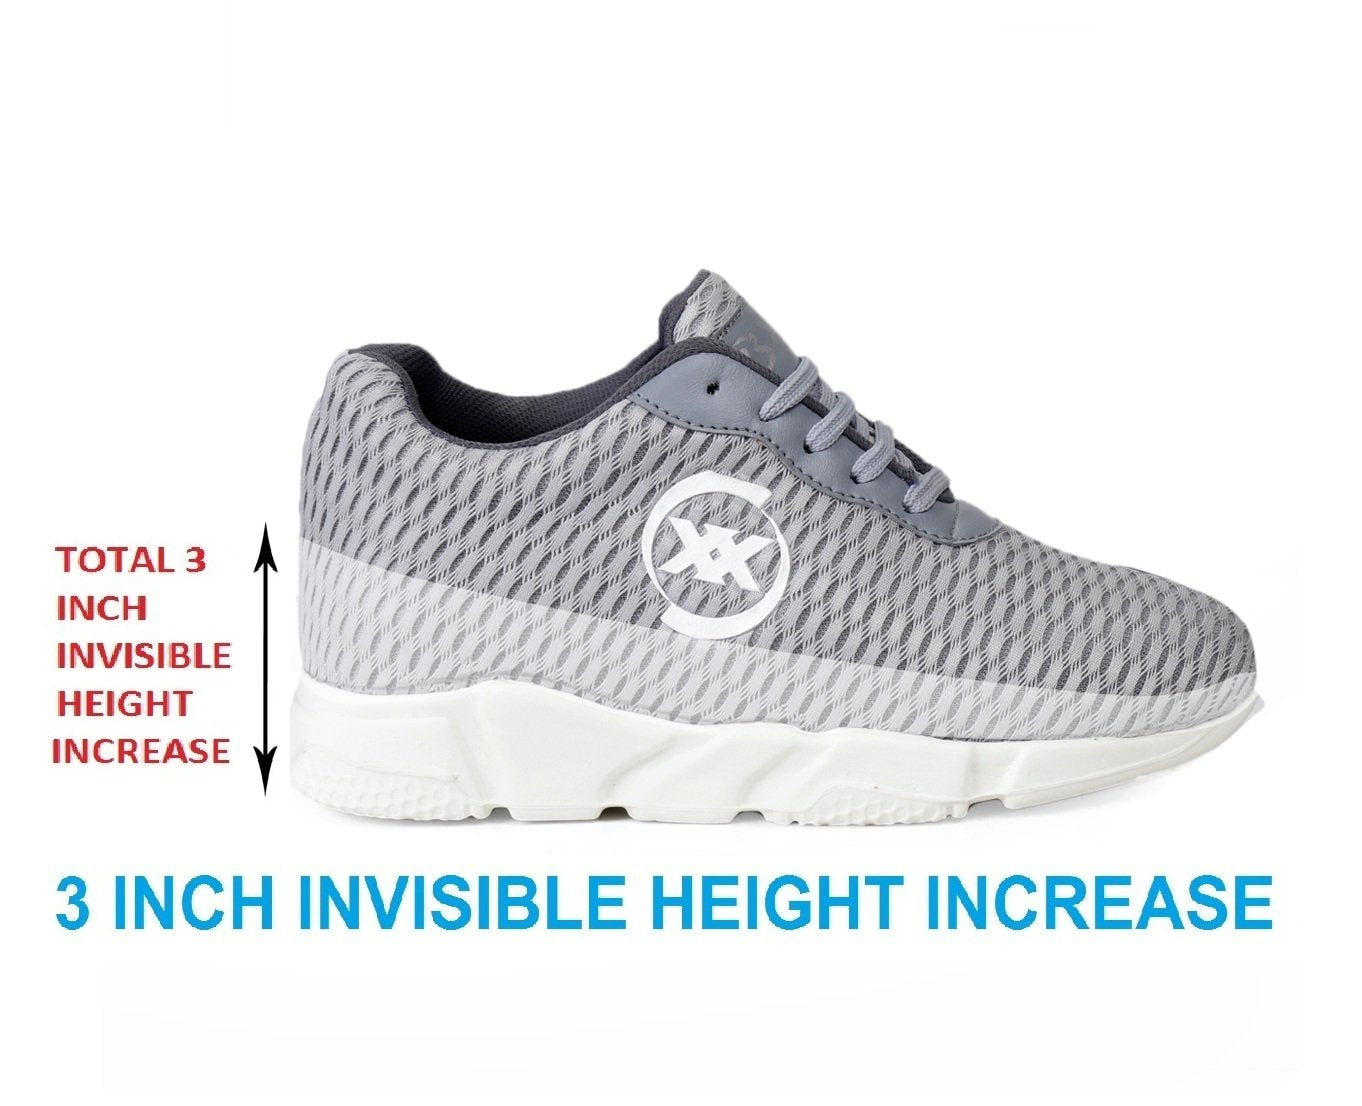 Men's 3 Inch Hidden Height Increasing Casual Sport Shoes